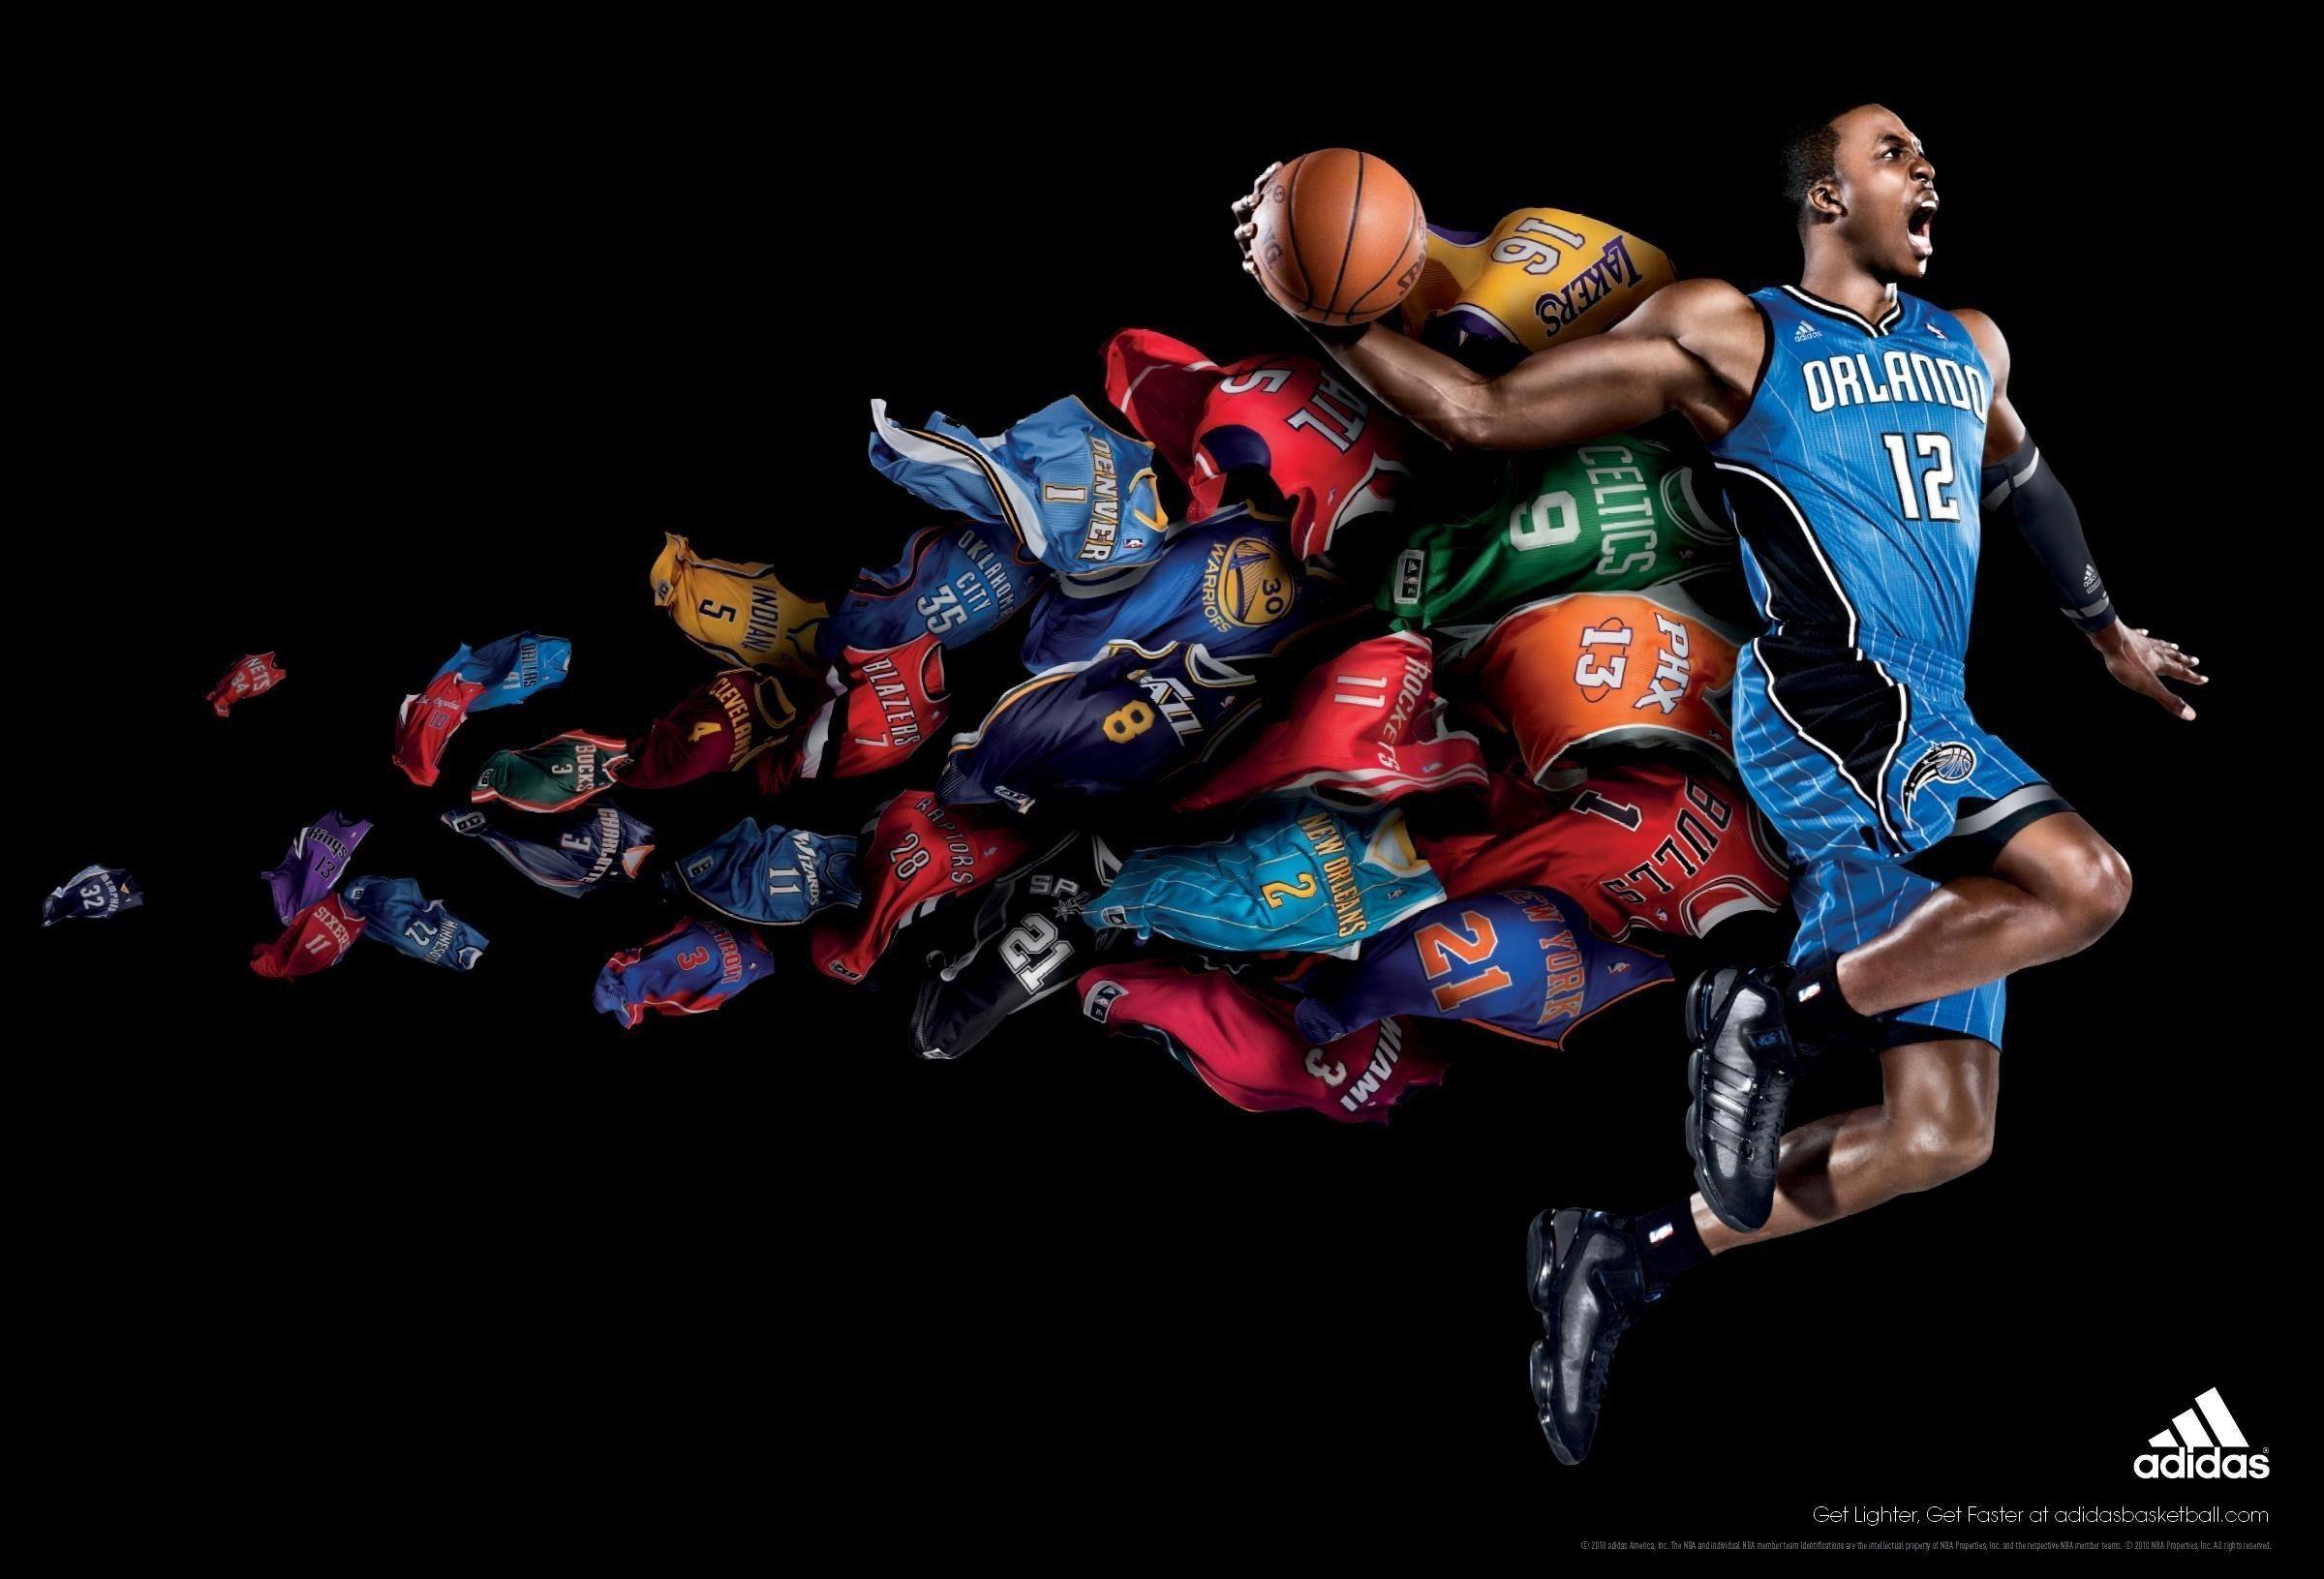 Adidas Basketball Wallpaper. High Definition Wallpaper, High